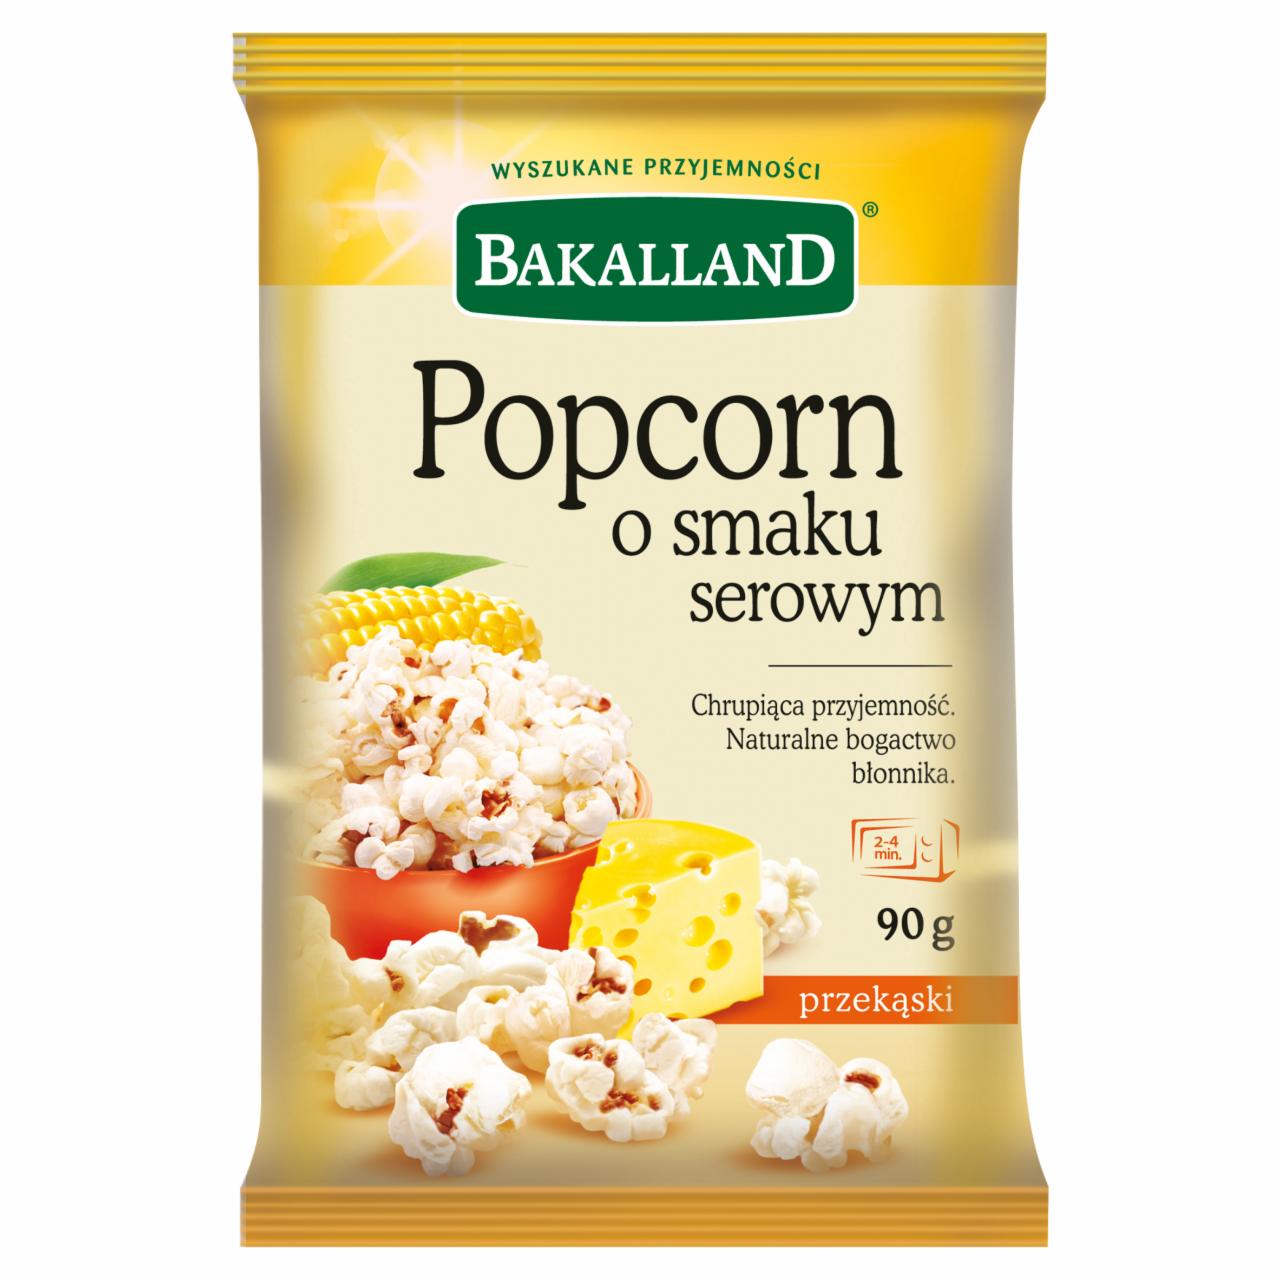 Zdjęcia - Bakalland Popcorn o smaku serowym 90 g